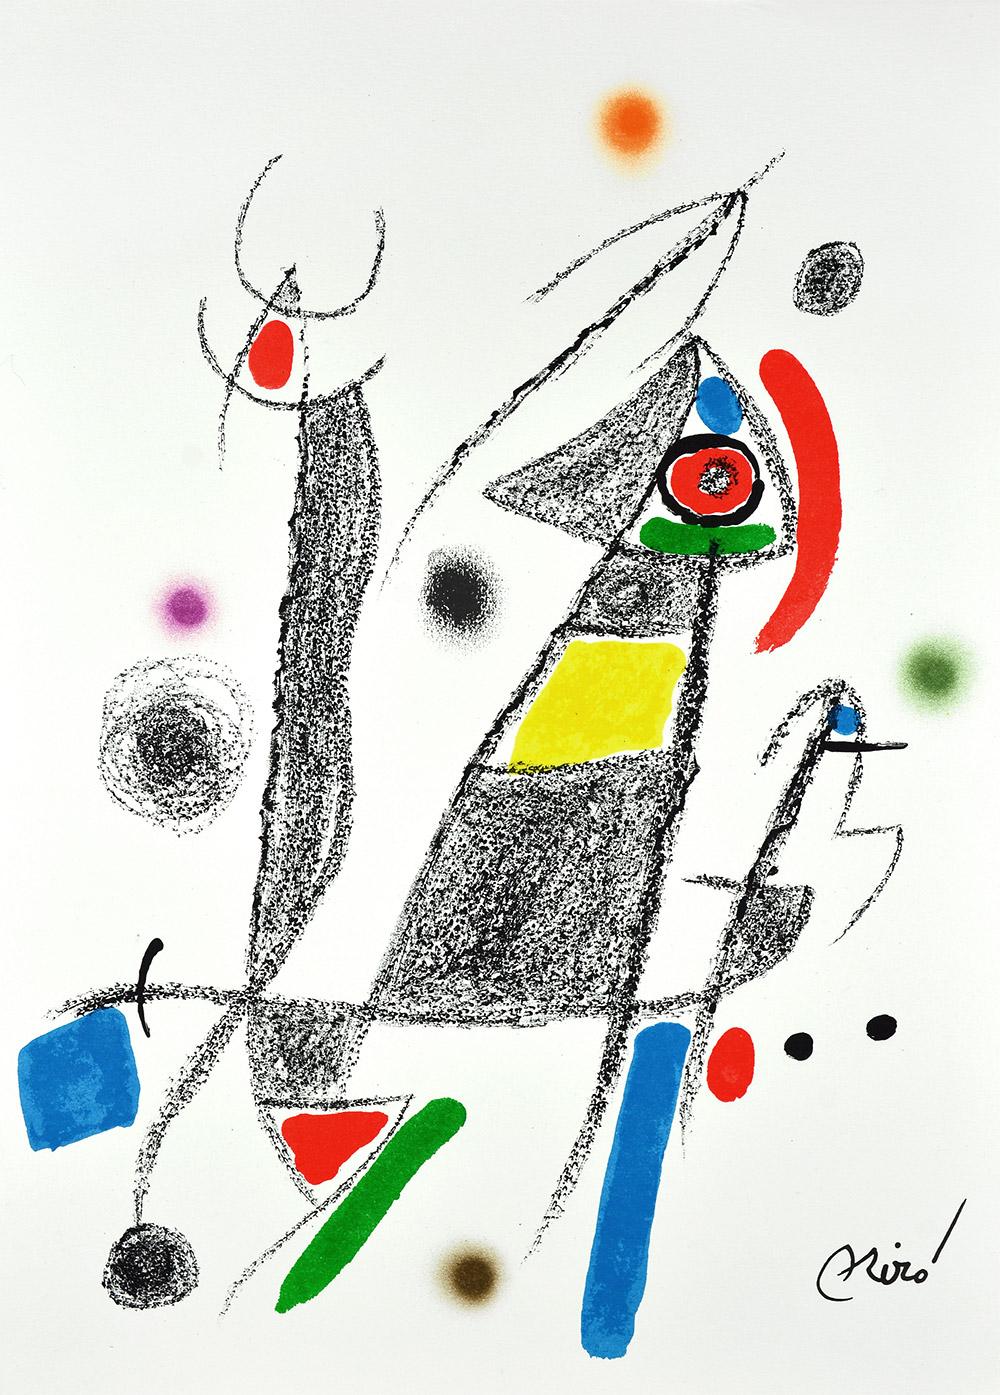 Joan Miró - Maravillas con variaciones acrósticas en el jardín de Miró VI
Date de création : 1975
Support : Lithographie sur papier Gvarro
Édition : 1500
Taille : 49,5 x 35,5 cm
Observations : Lithographie sur plaque de papier Gvarro signée. Édité